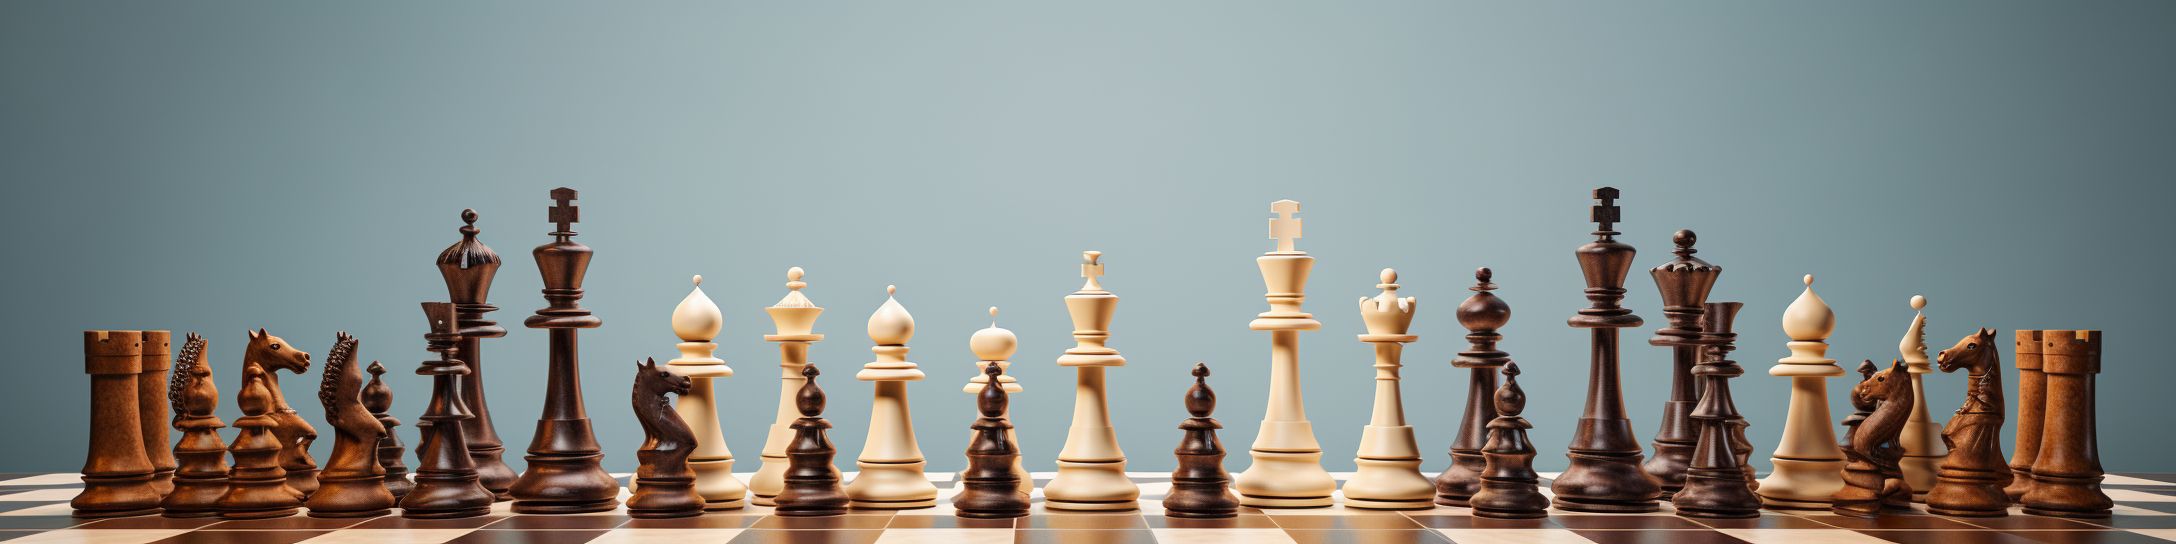 Avantages et inconvénients des grands jeux d'échecs